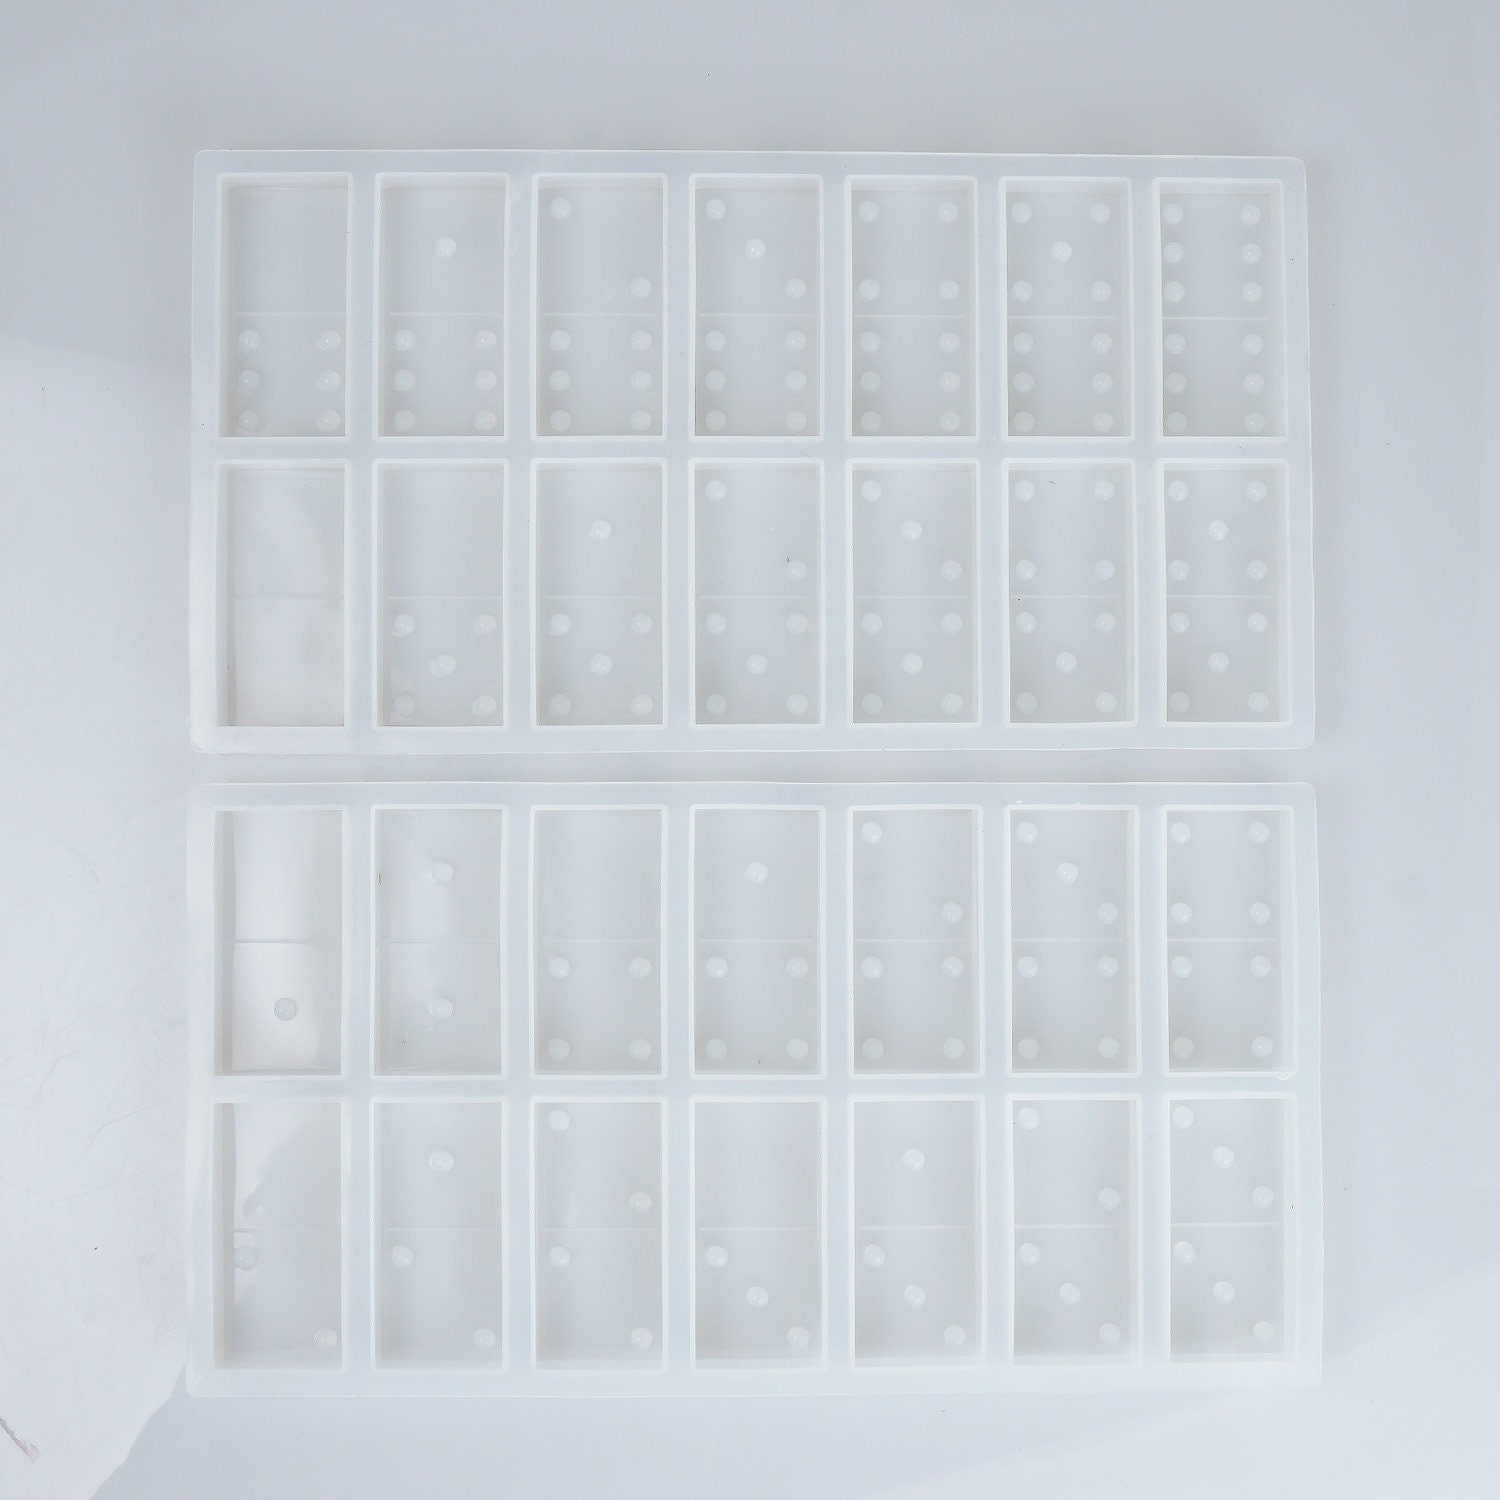 Silicone Dominos Mold For 1.90.9 inch domino pieces DIY | Etsy